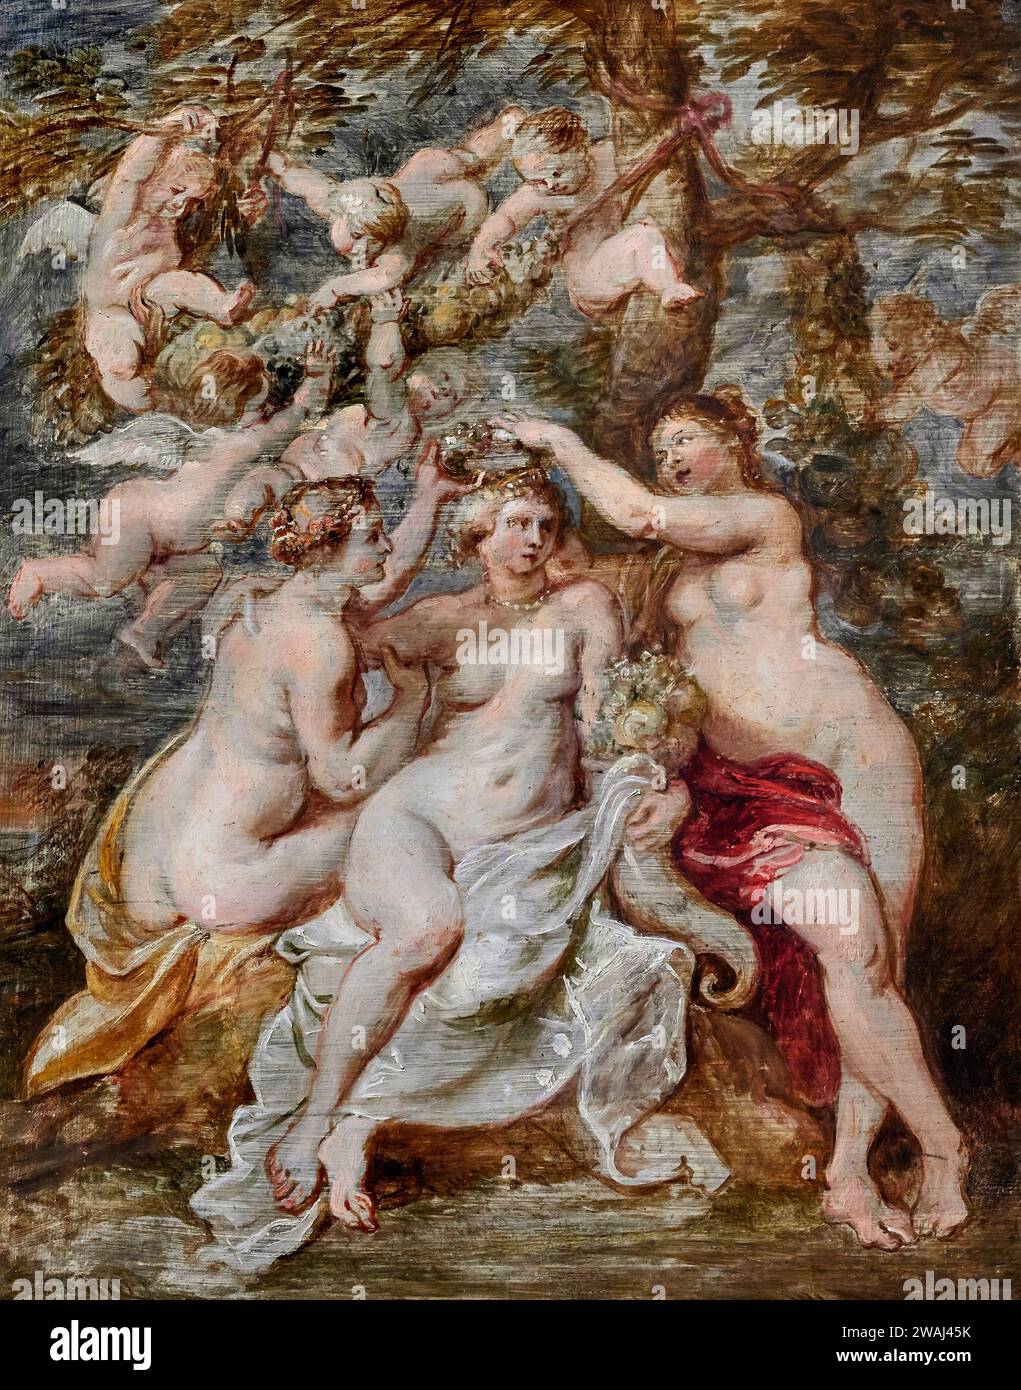 Incoronazione dell’ Abbondanza - olio su tavola - Pieter Paul Rubens 1622 - Roma, Accademia Nazionale di San Luca Banque D'Images